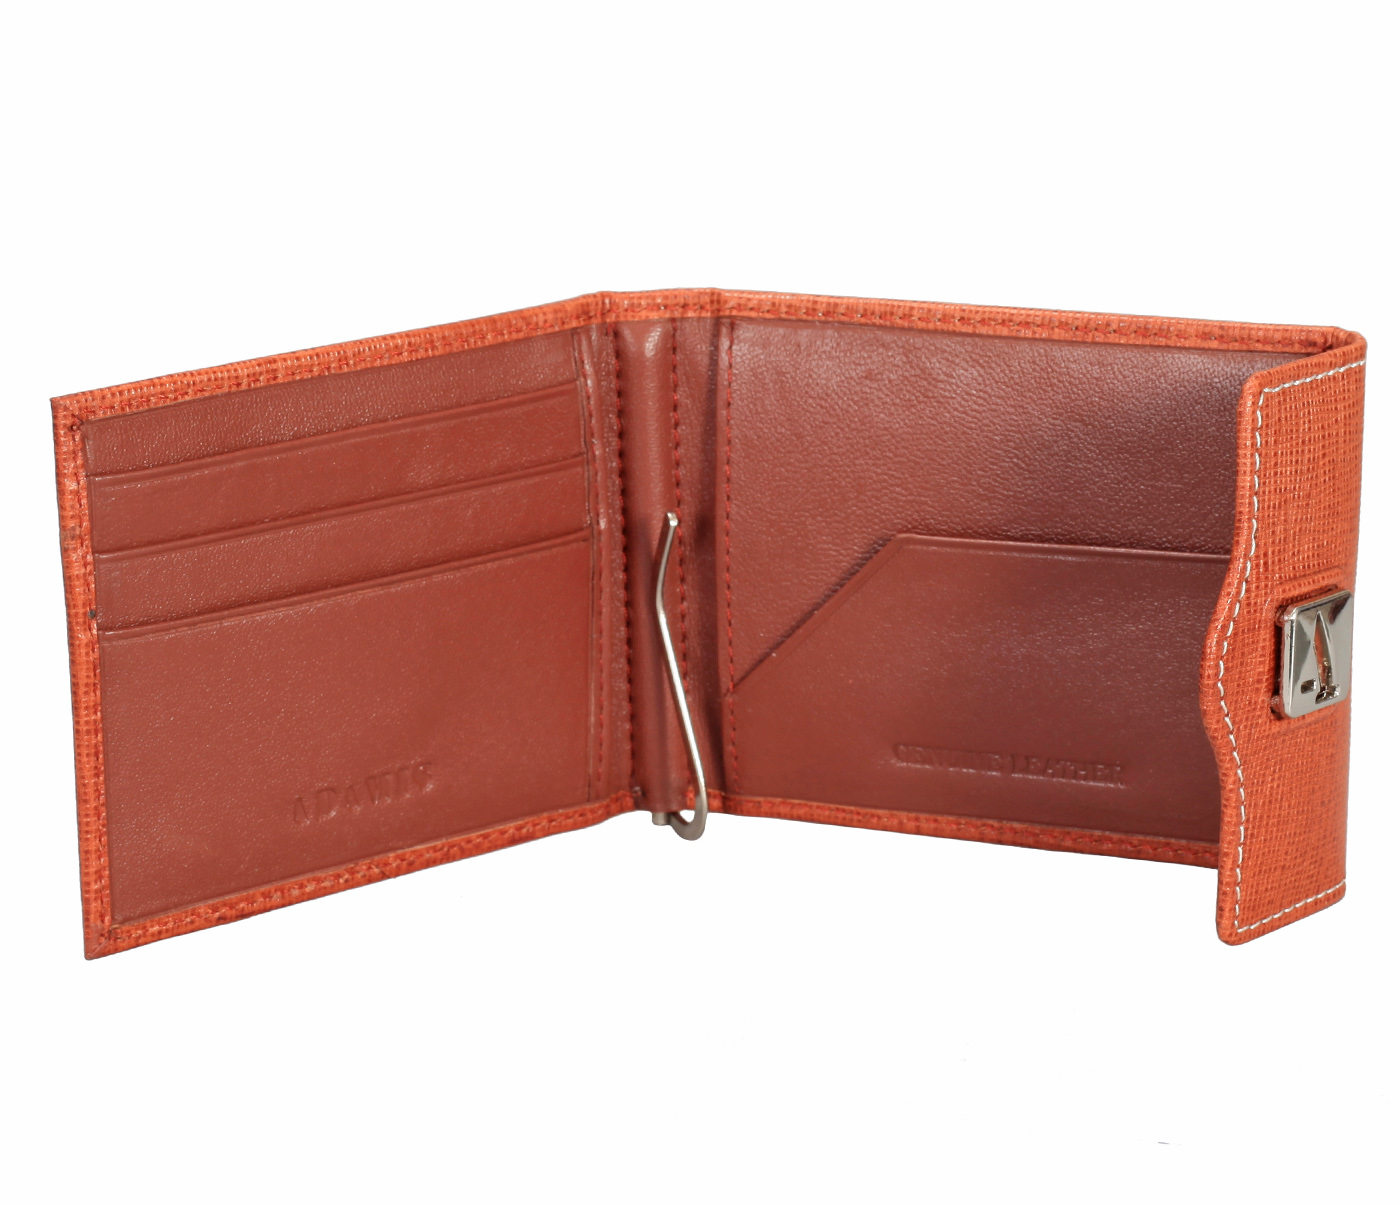 W328-Noah-Men's bifold money clip wallet in Genuine Leather - Tan